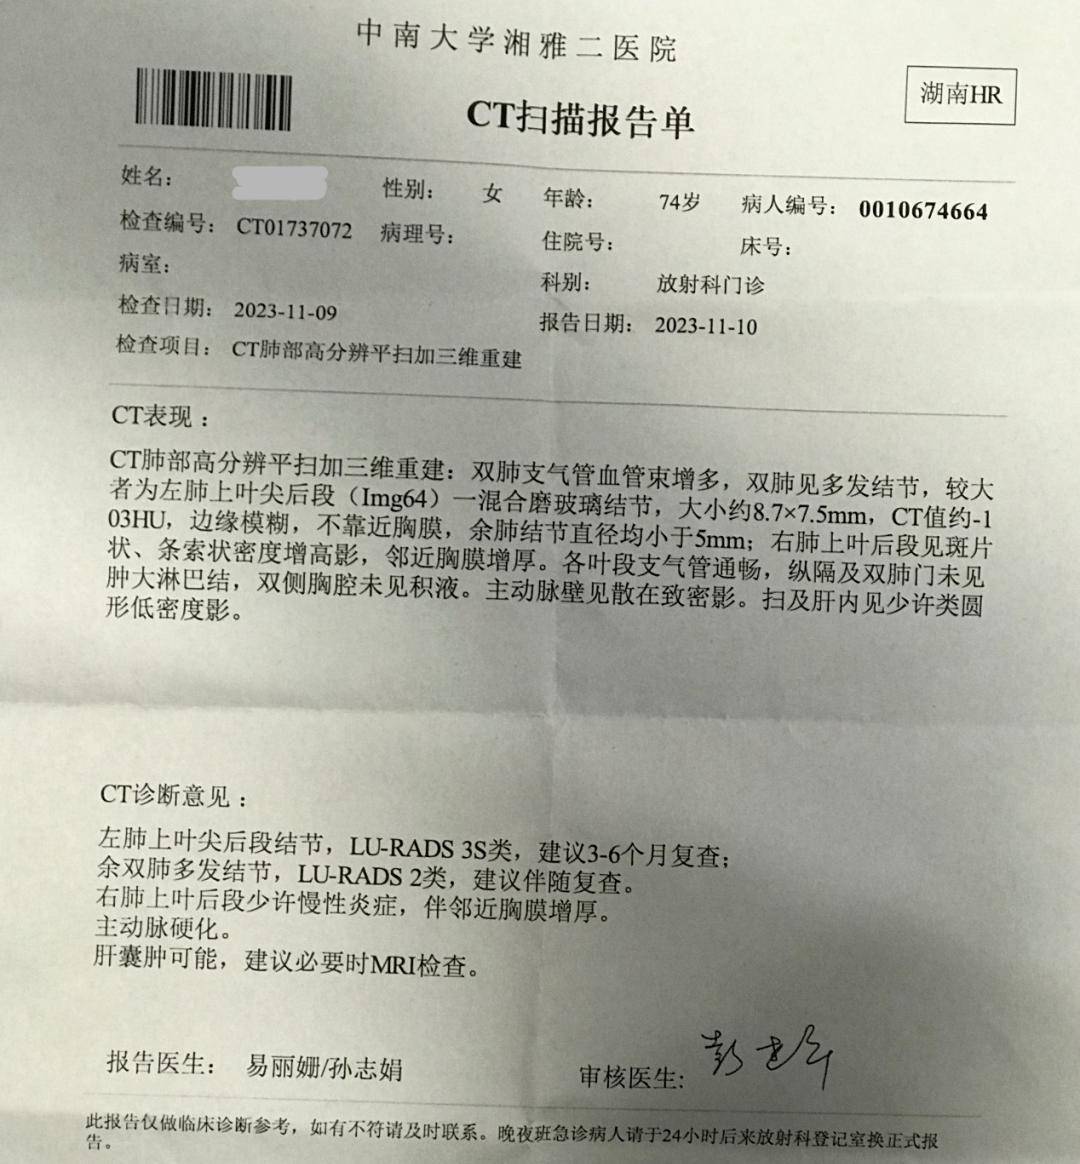 17 湖南省湘西自治州人民医院 ct报告单:随访:按语患者首诊以咳嗽一